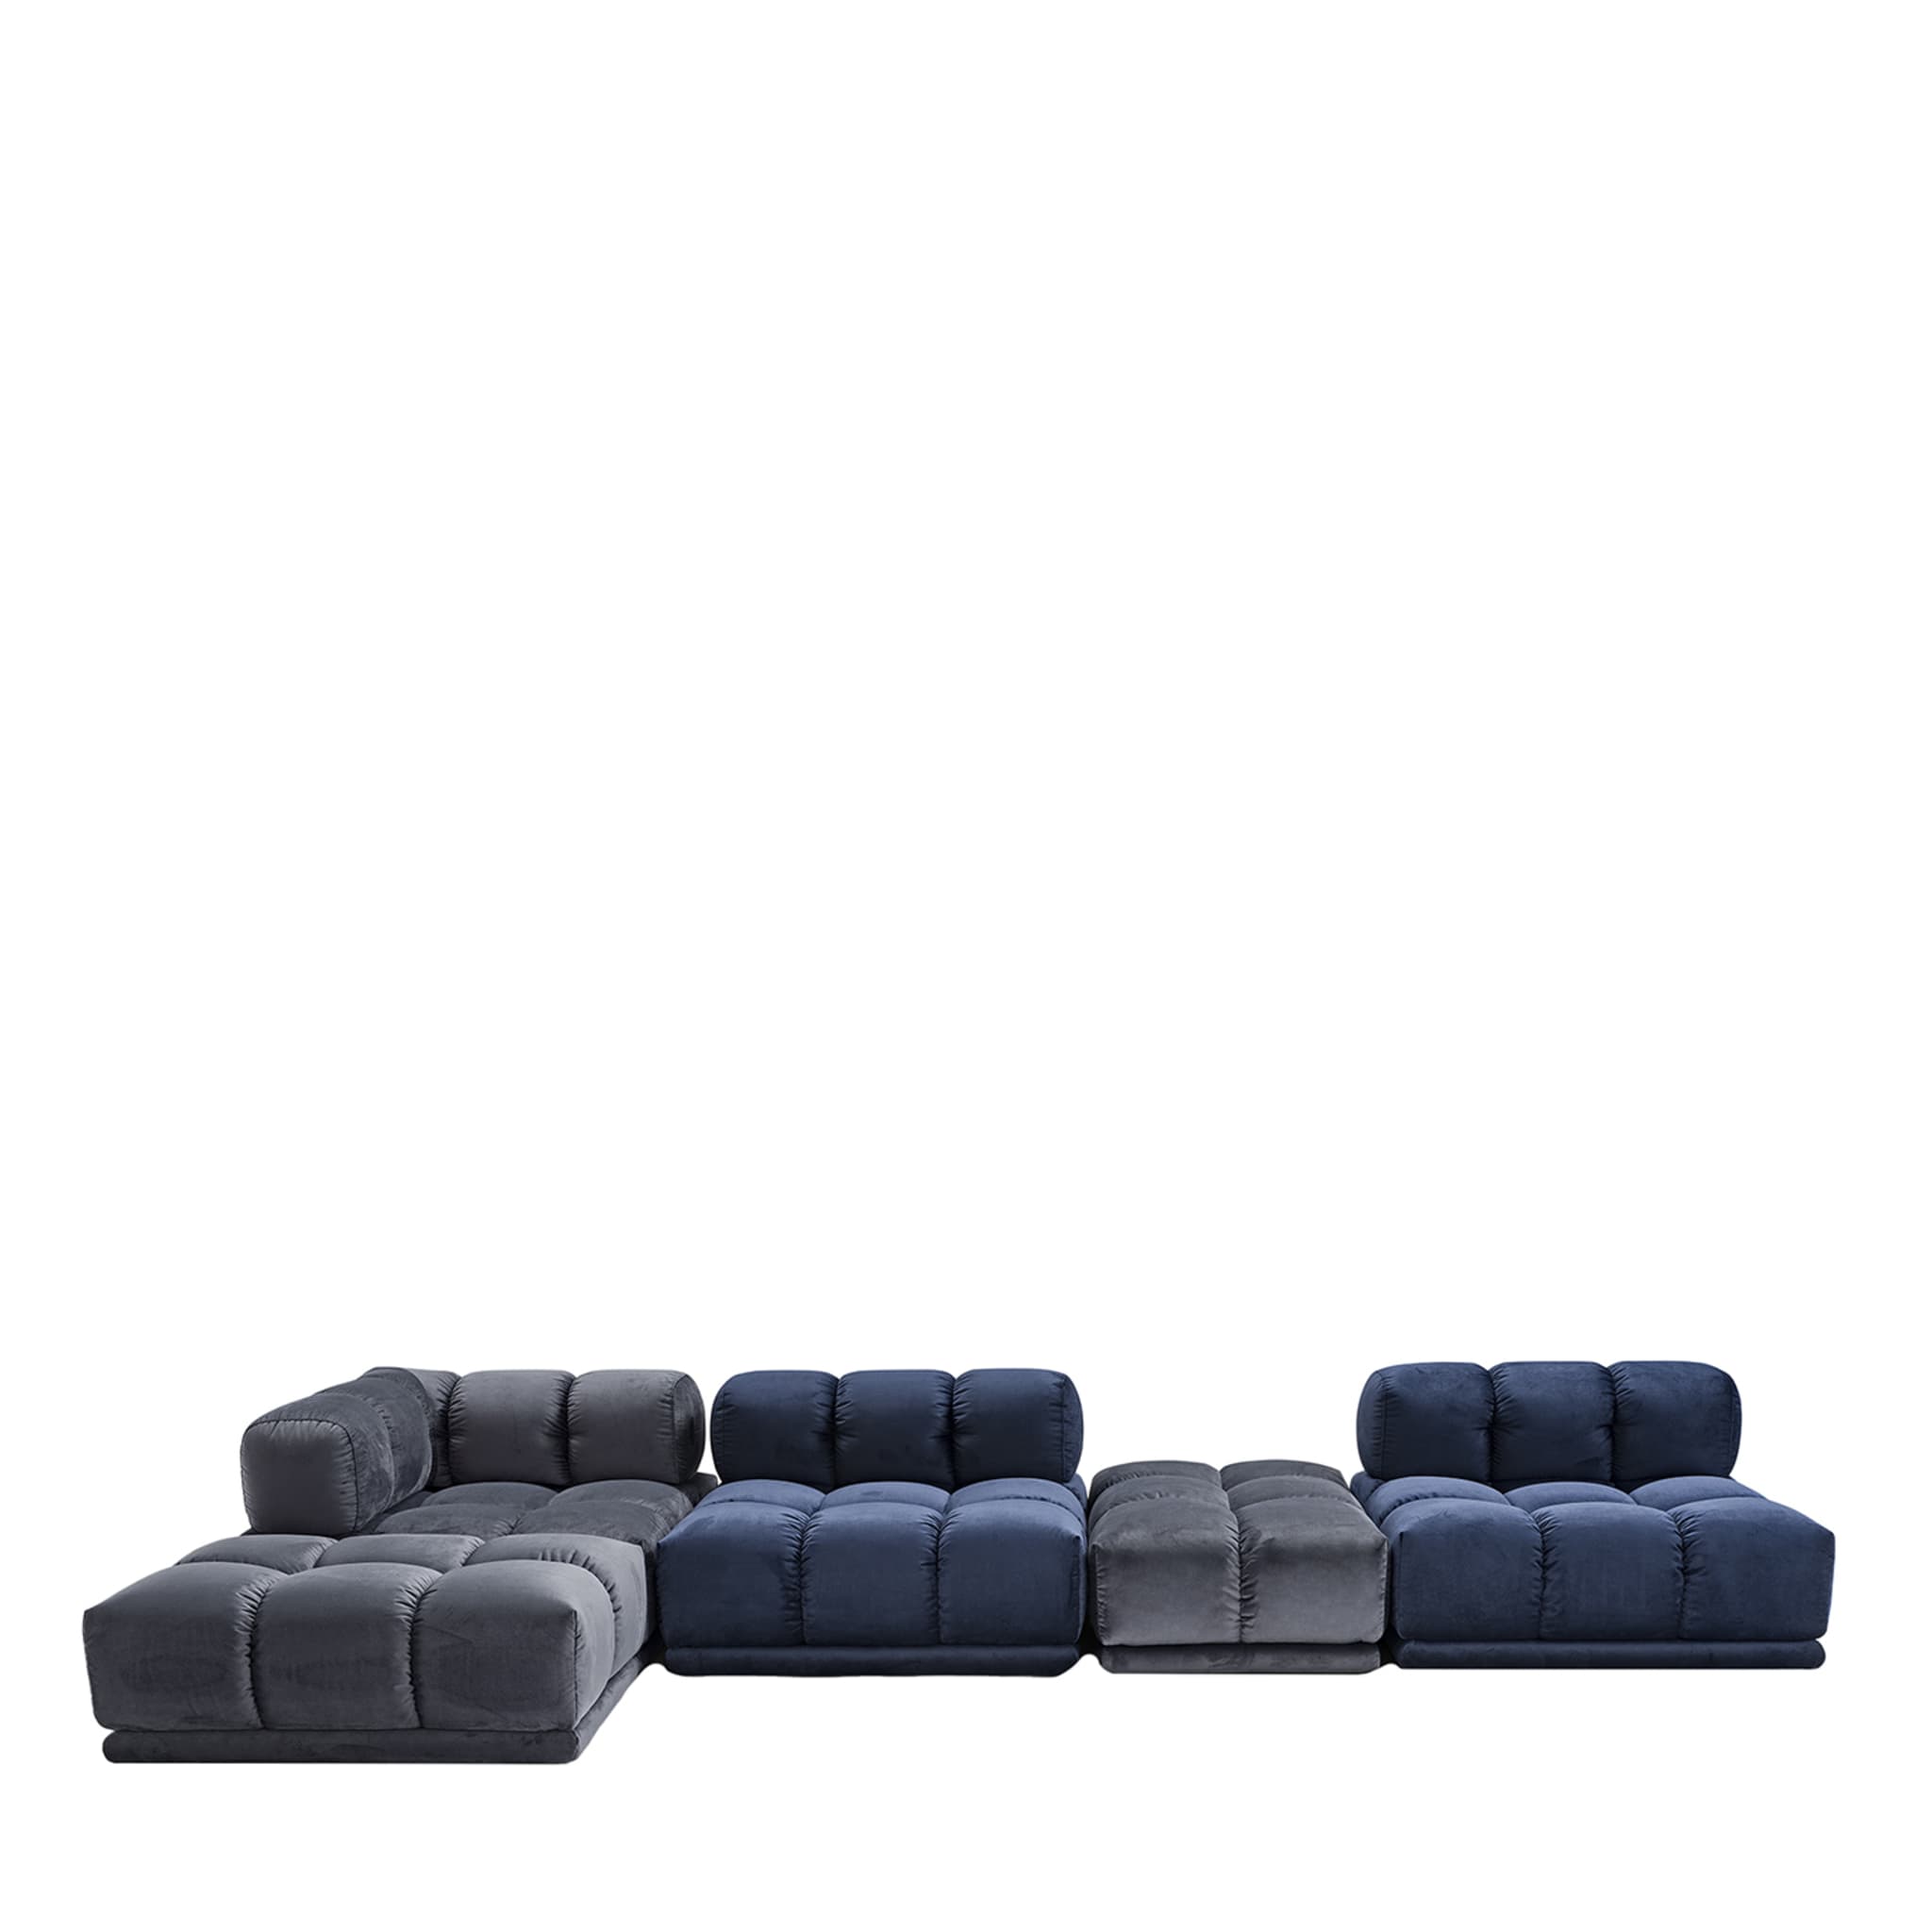 Sacai 5-Module Gray & Blue Sofa - Main view